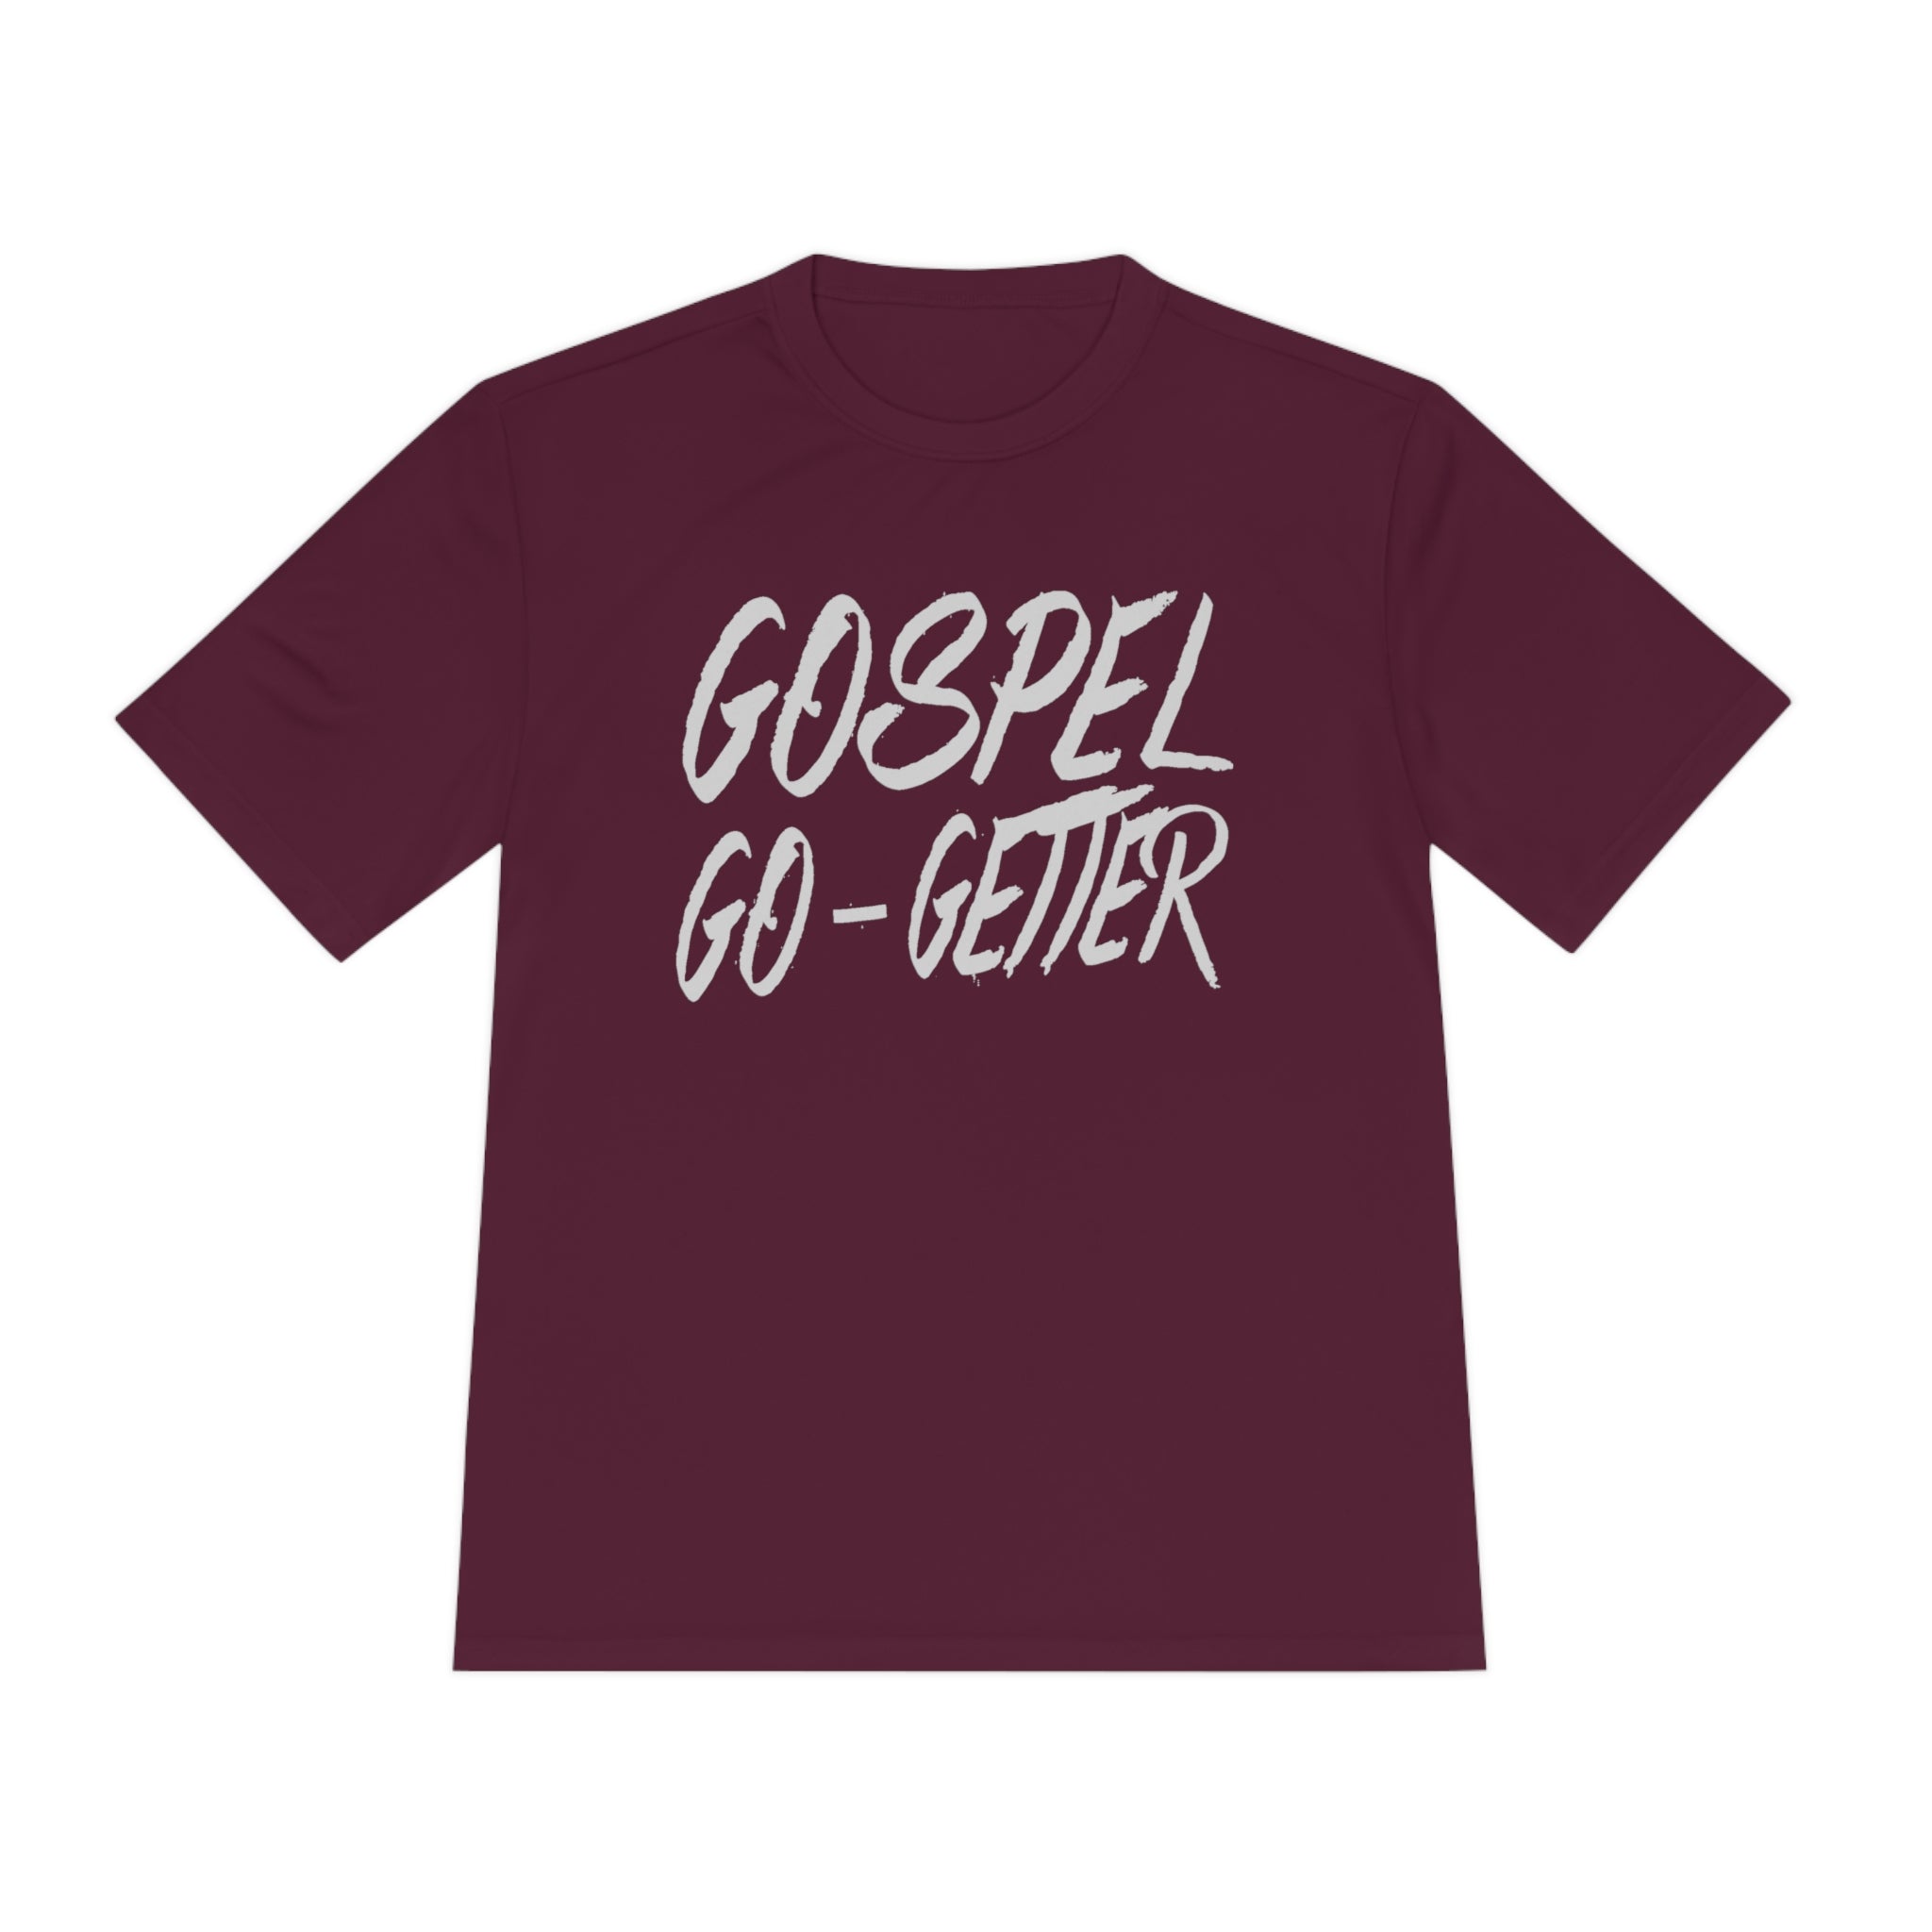 Gospel Go-Getter Plus Tee